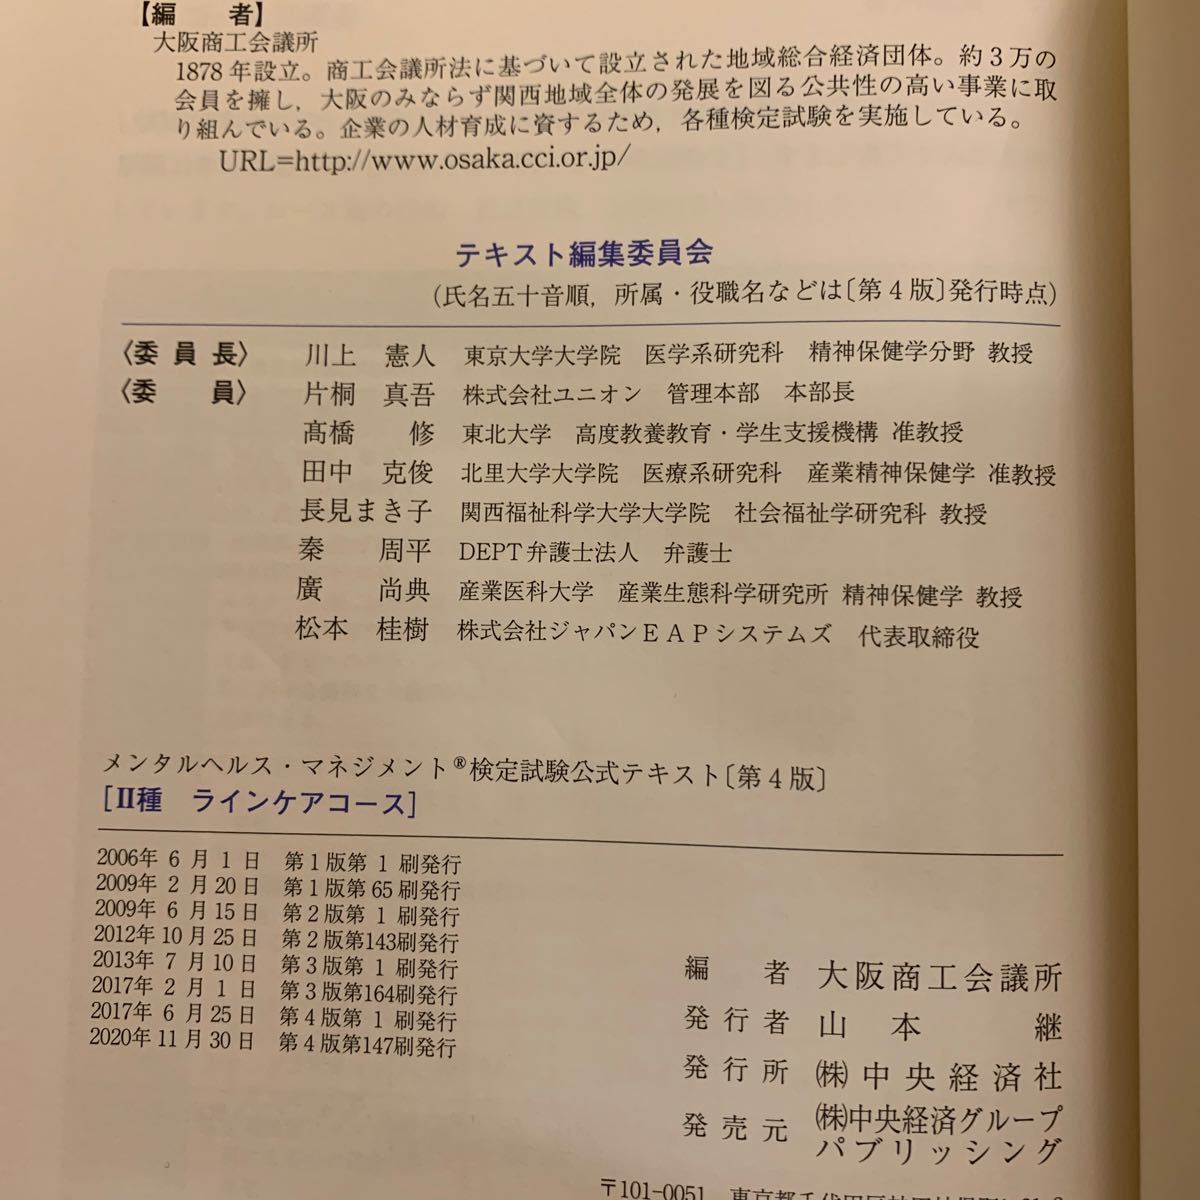 メンタルヘルスマネジメント検定試験公式テキスト2種ラインケアコース/大阪商工会議所